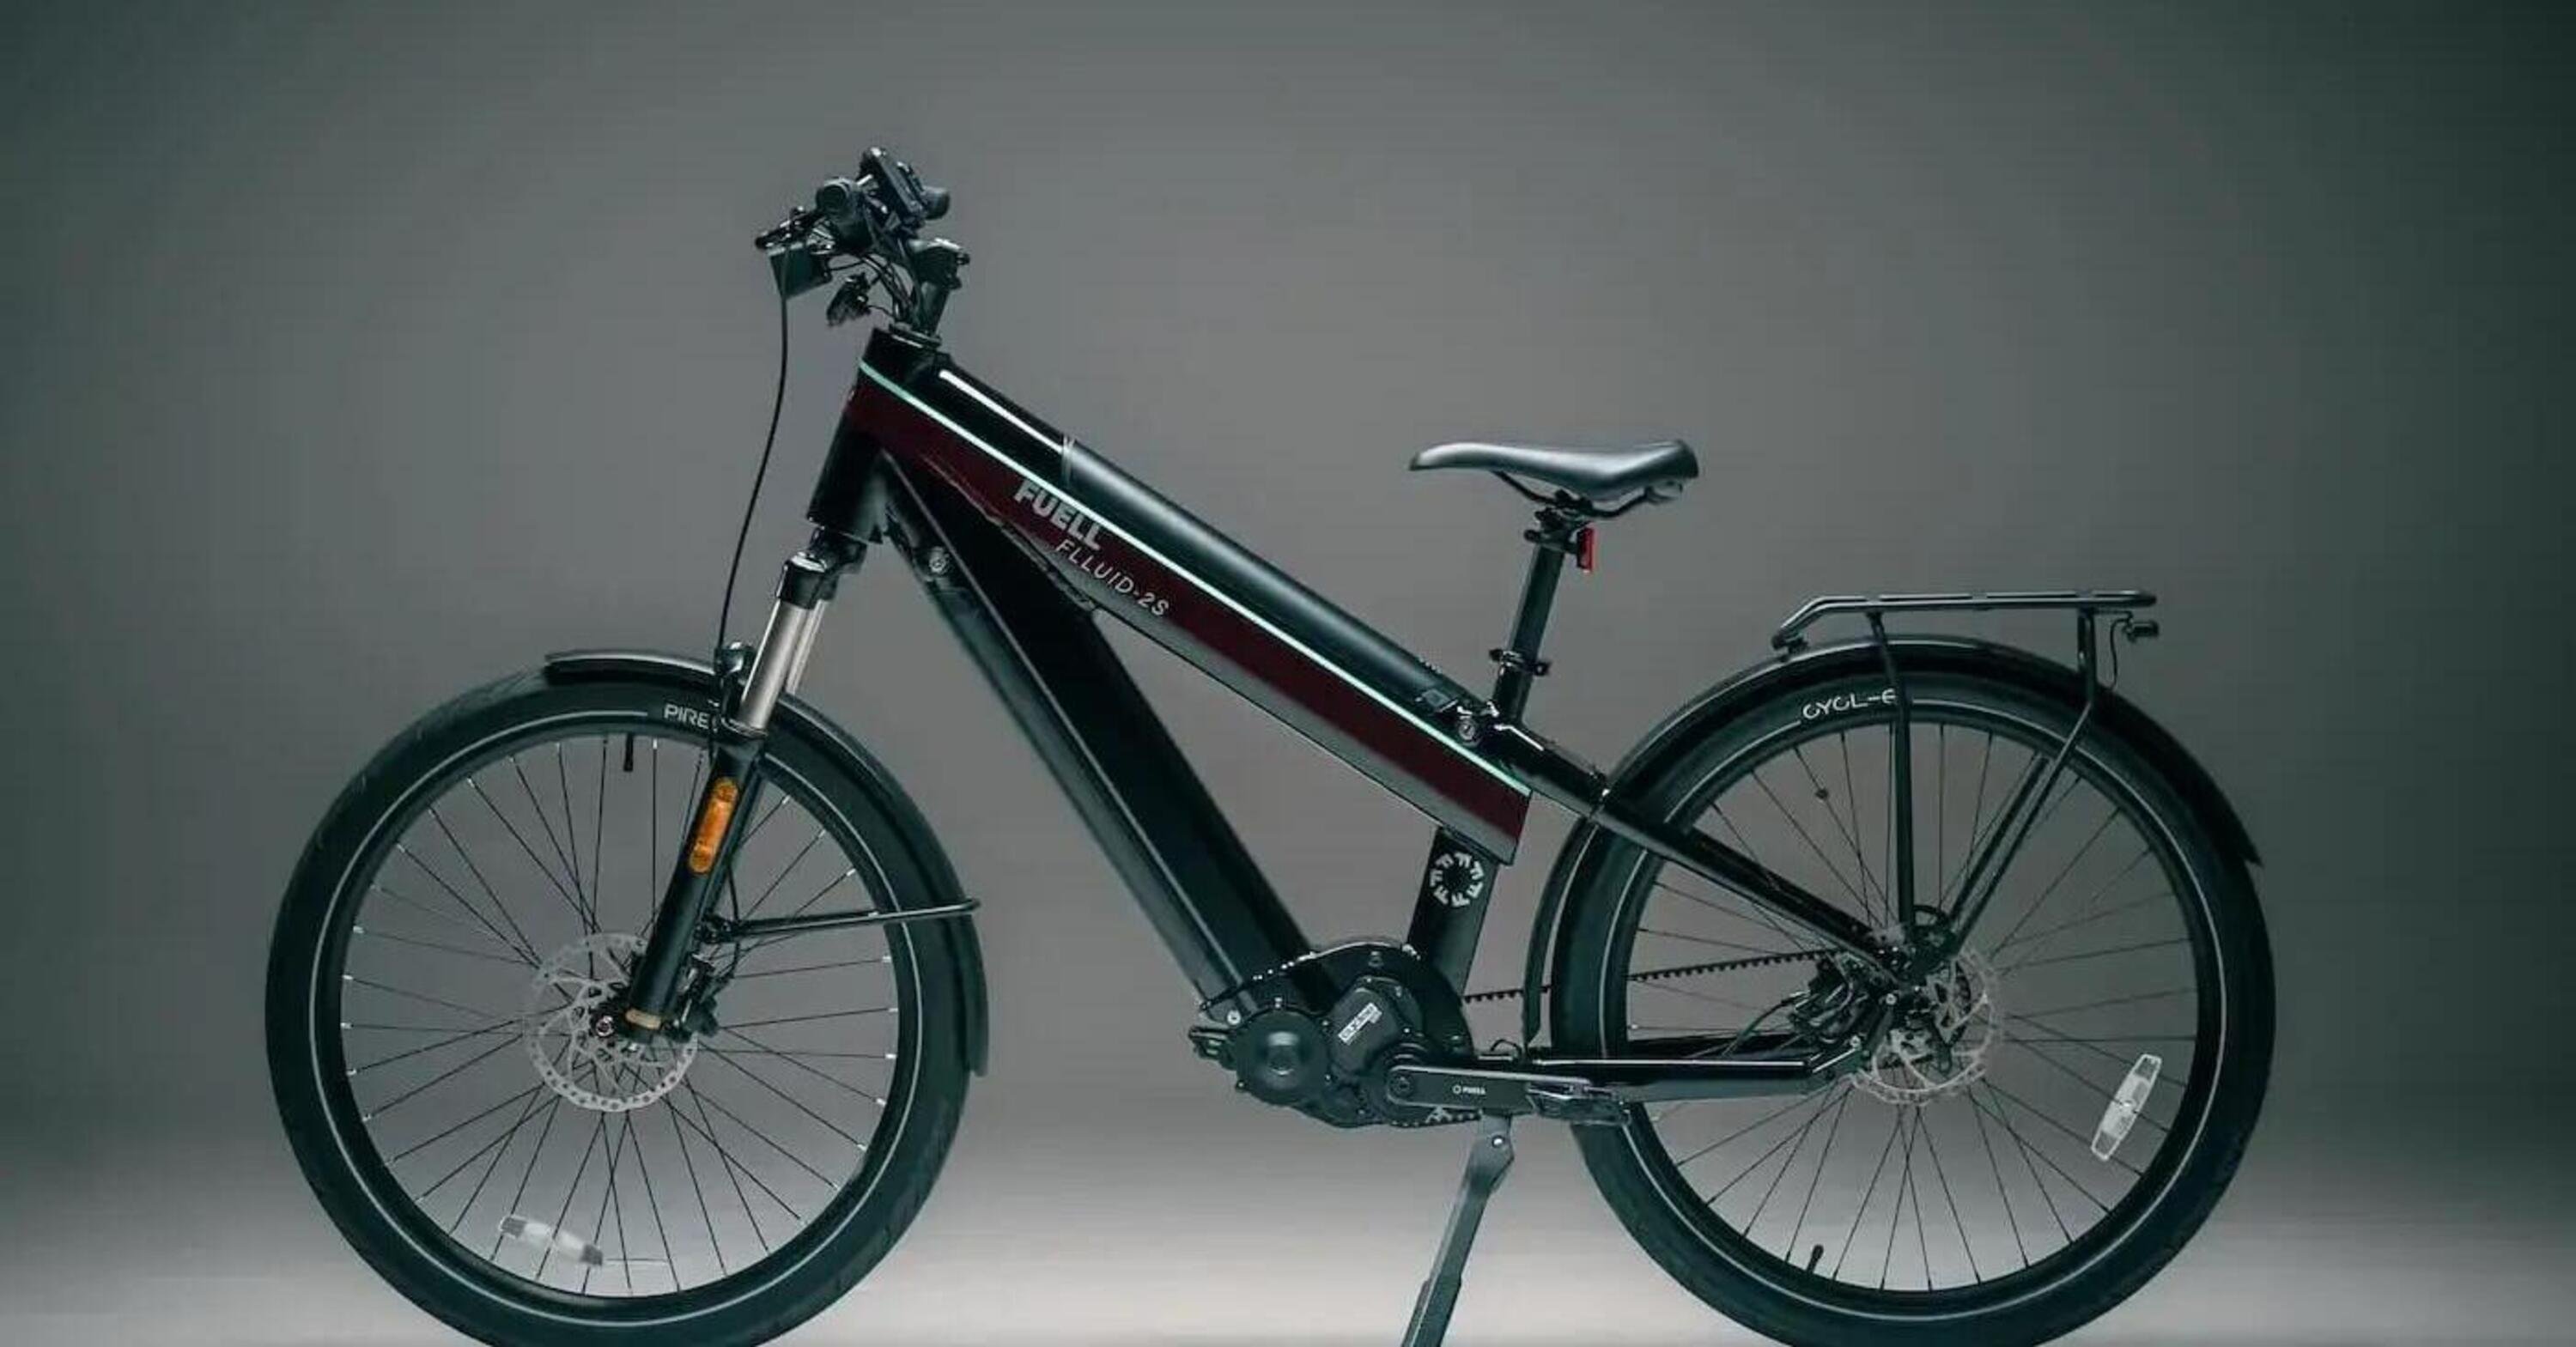 La e-bike con la maggior autonomia? Chi poteva pensarci se non Erik Buell?